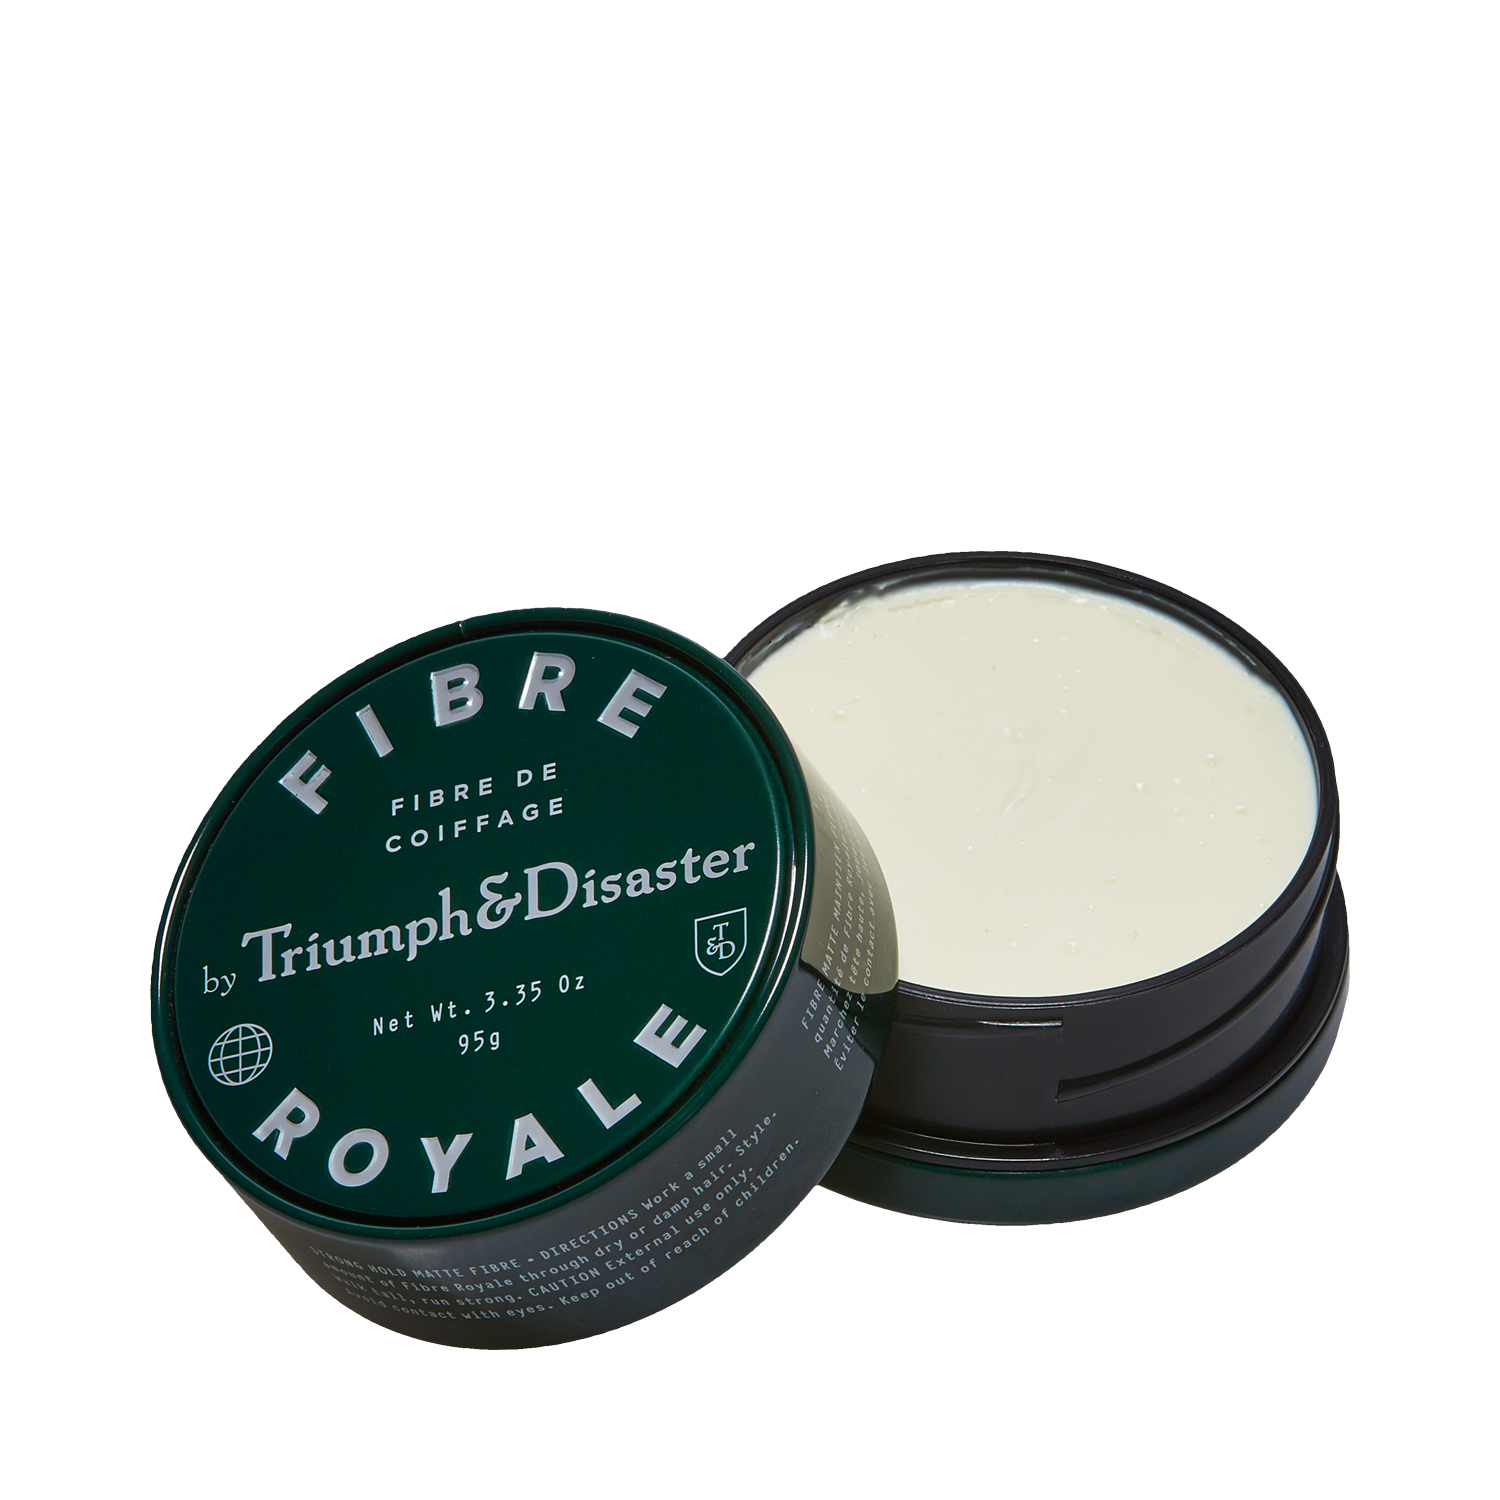 Triumph & Disaster - Fibre Royale Pomade - natürlicher Look und starker Halt